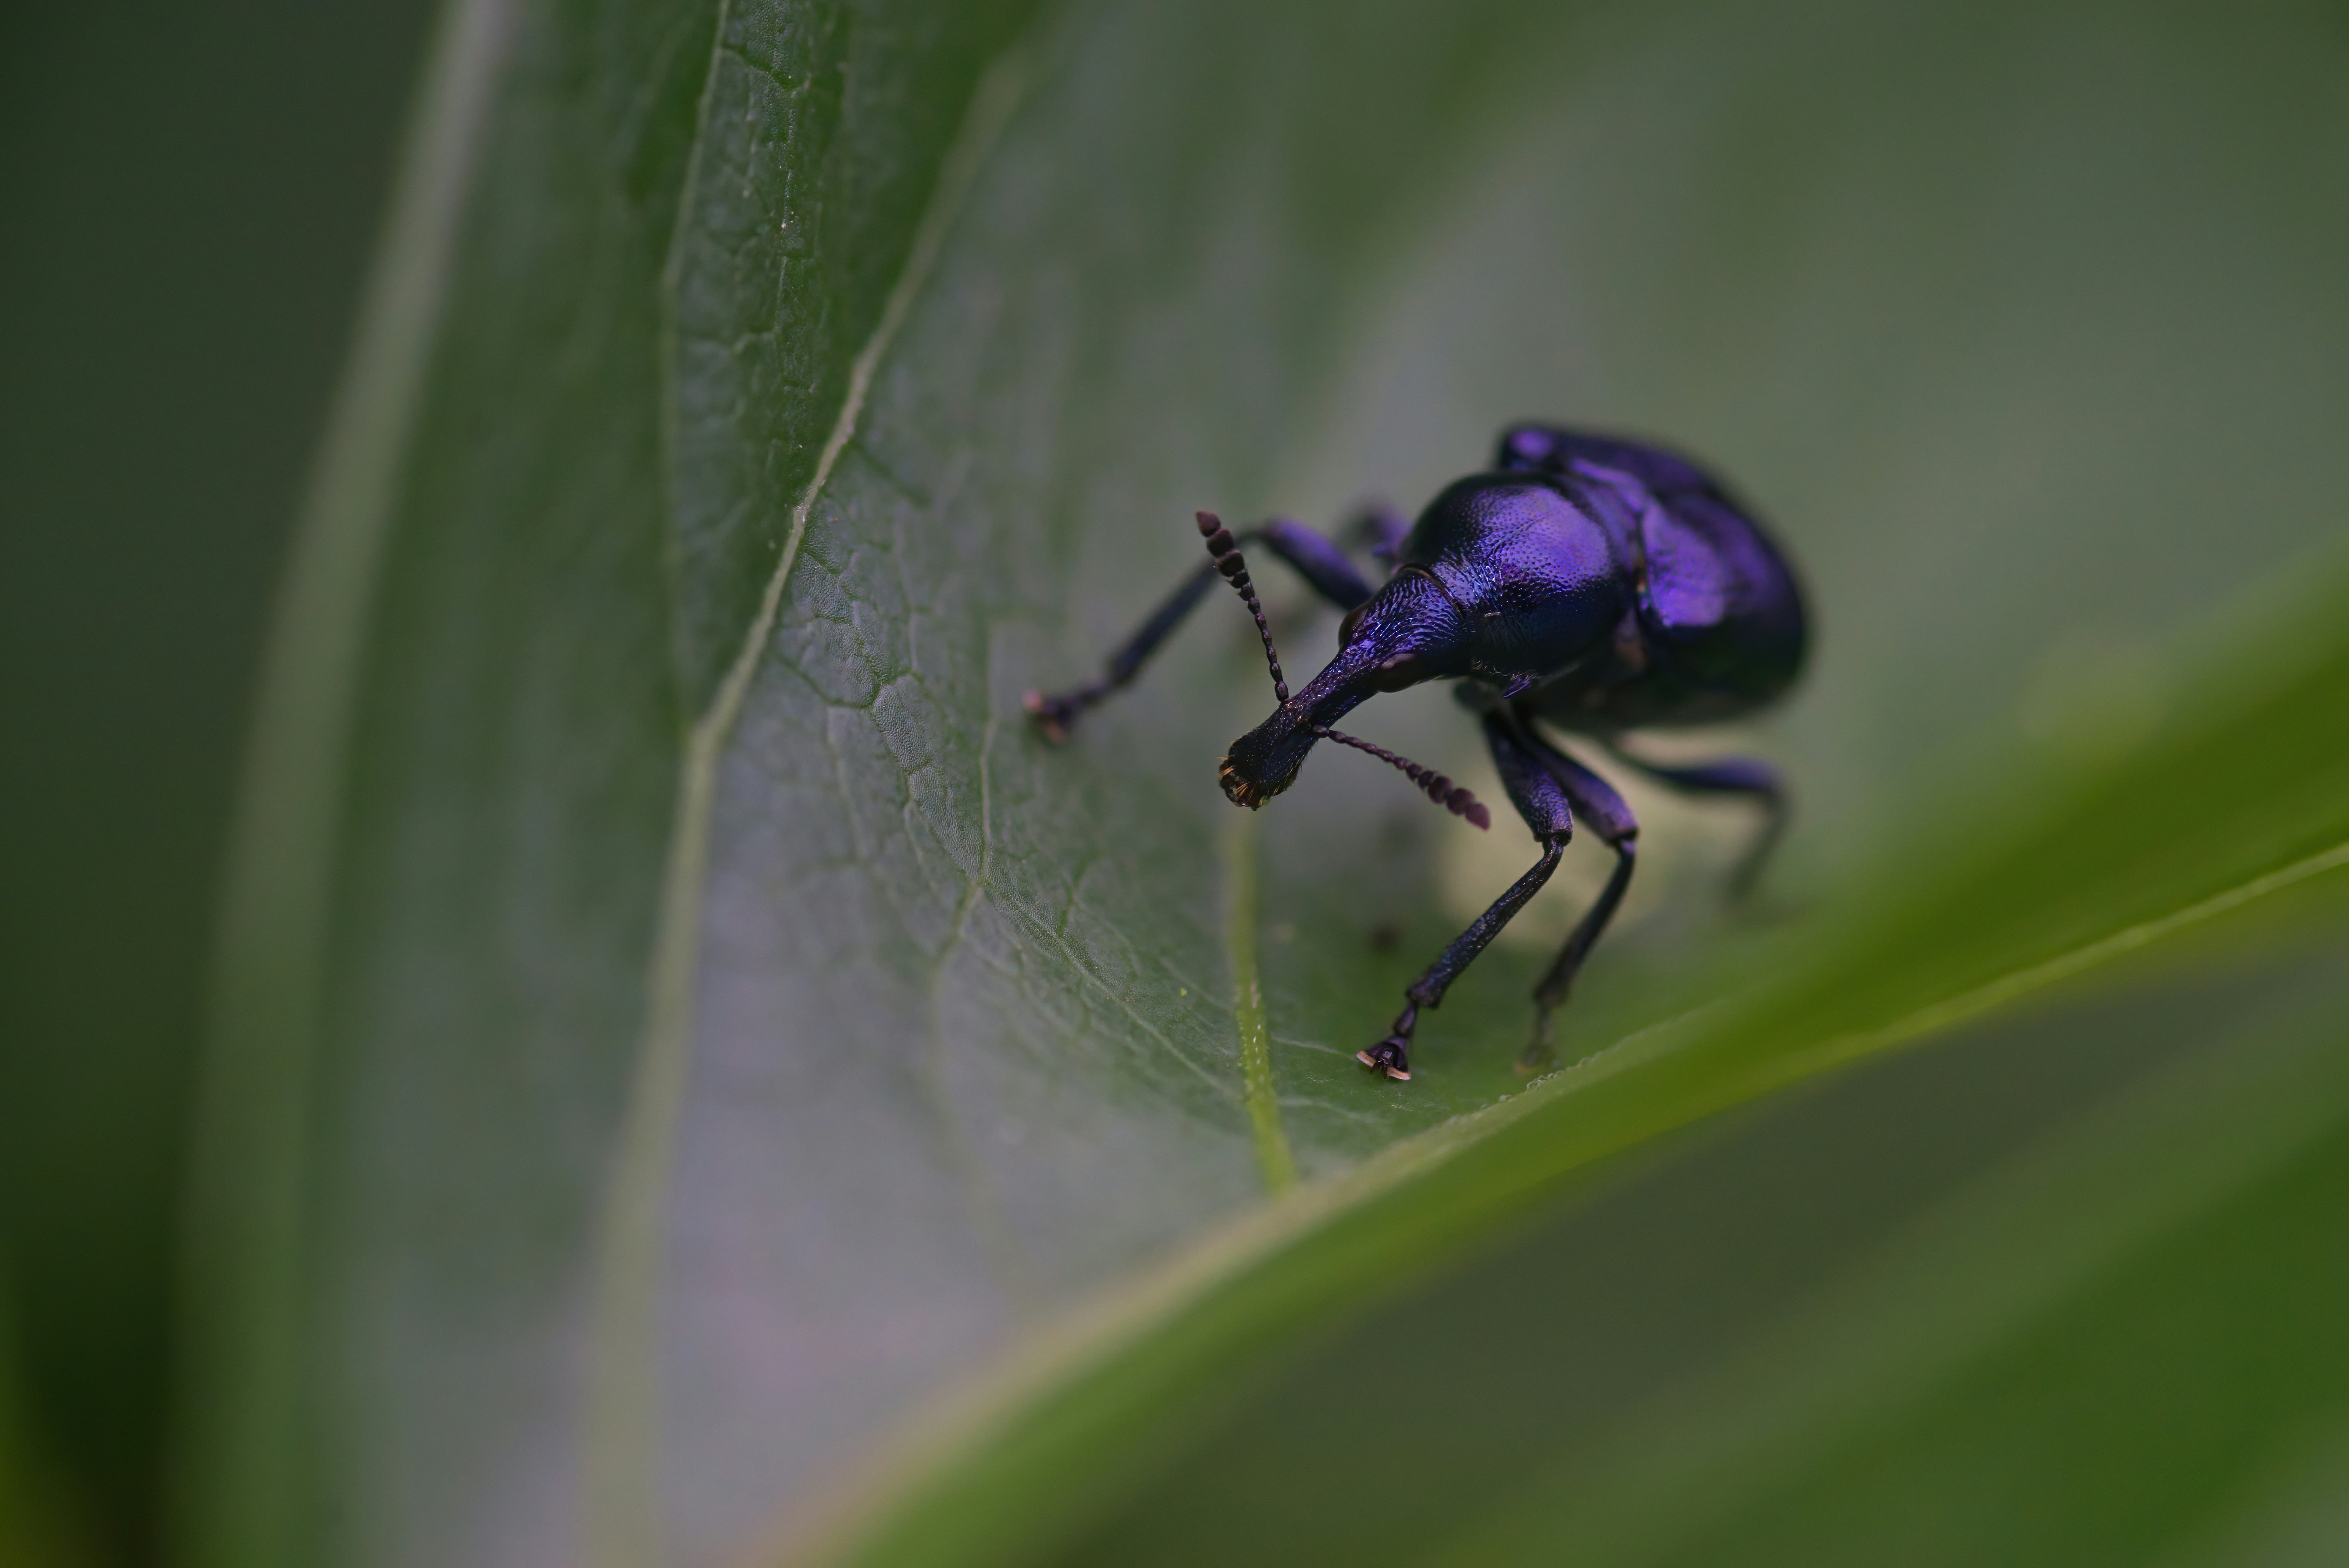 purple and black beetle on green leaf